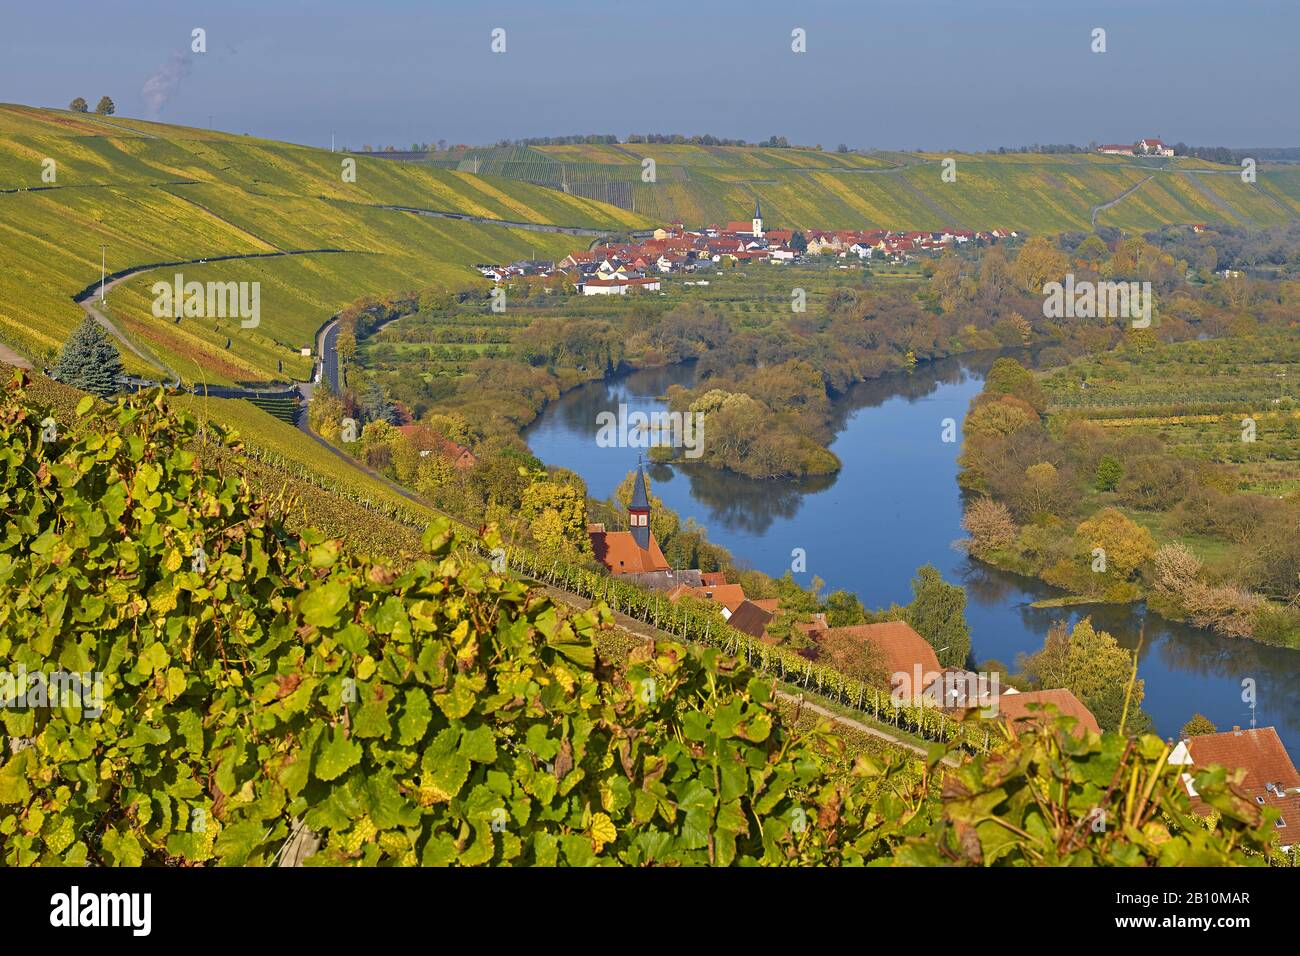 Vineyards with Escher village near Koehler, Mainfranken, Bavaria, Germany Stock Photo